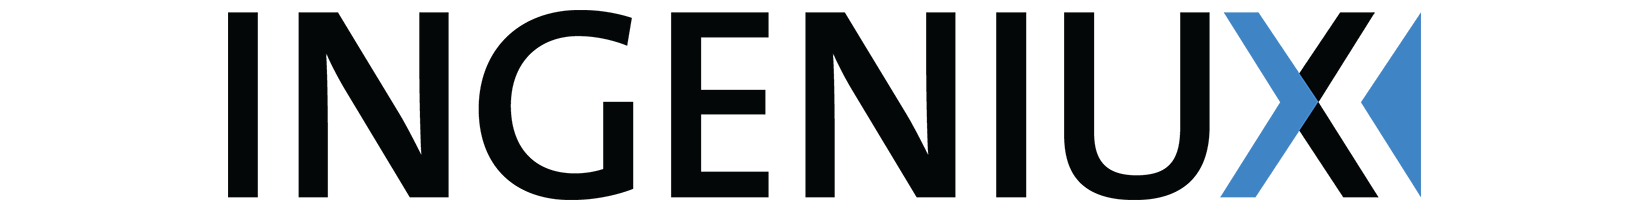 Ingeniux logo